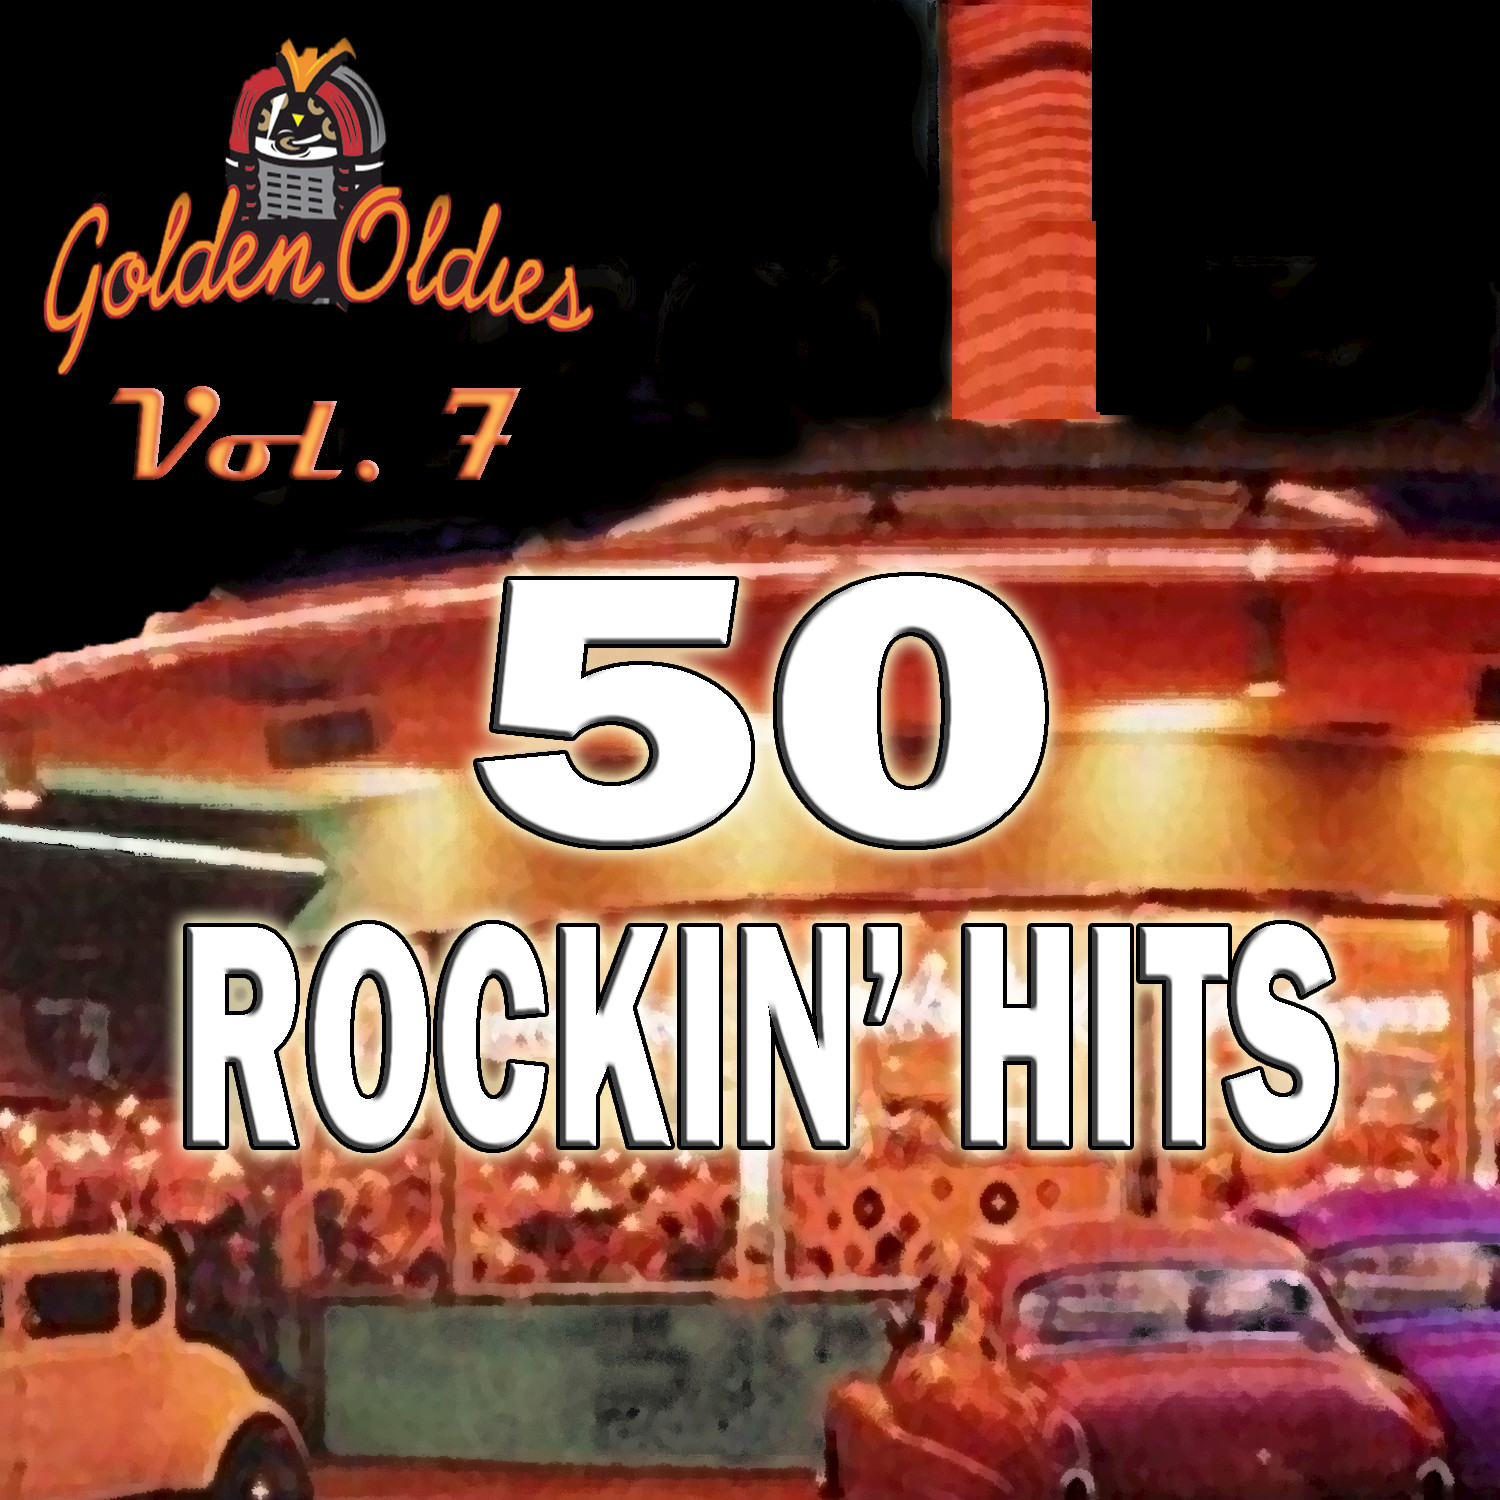 50 Rockin' Hits, Vol. 7